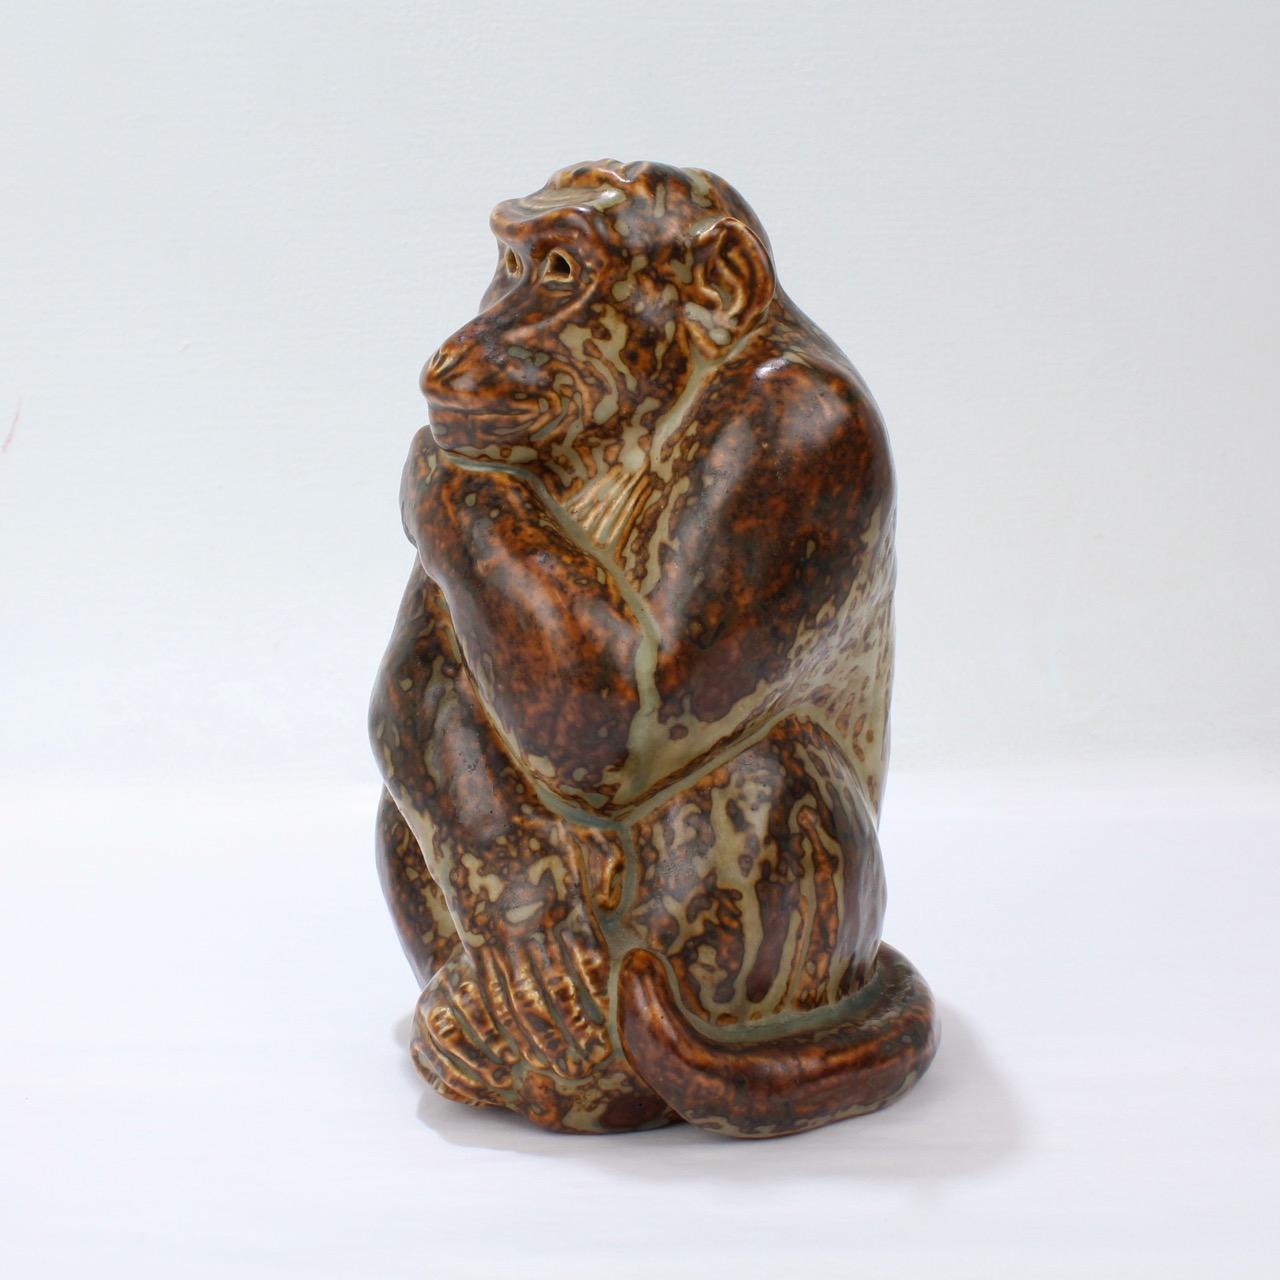 Un merveilleux modèle de poterie en grès représentant un singe conçu par Knud Khyn pour Royal Copenhagen.

Knud Khyn (1880-1969) était un sculpteur et un peintre danois. Il a été un collaborateur important et de longue date de Royal Copenhagen,